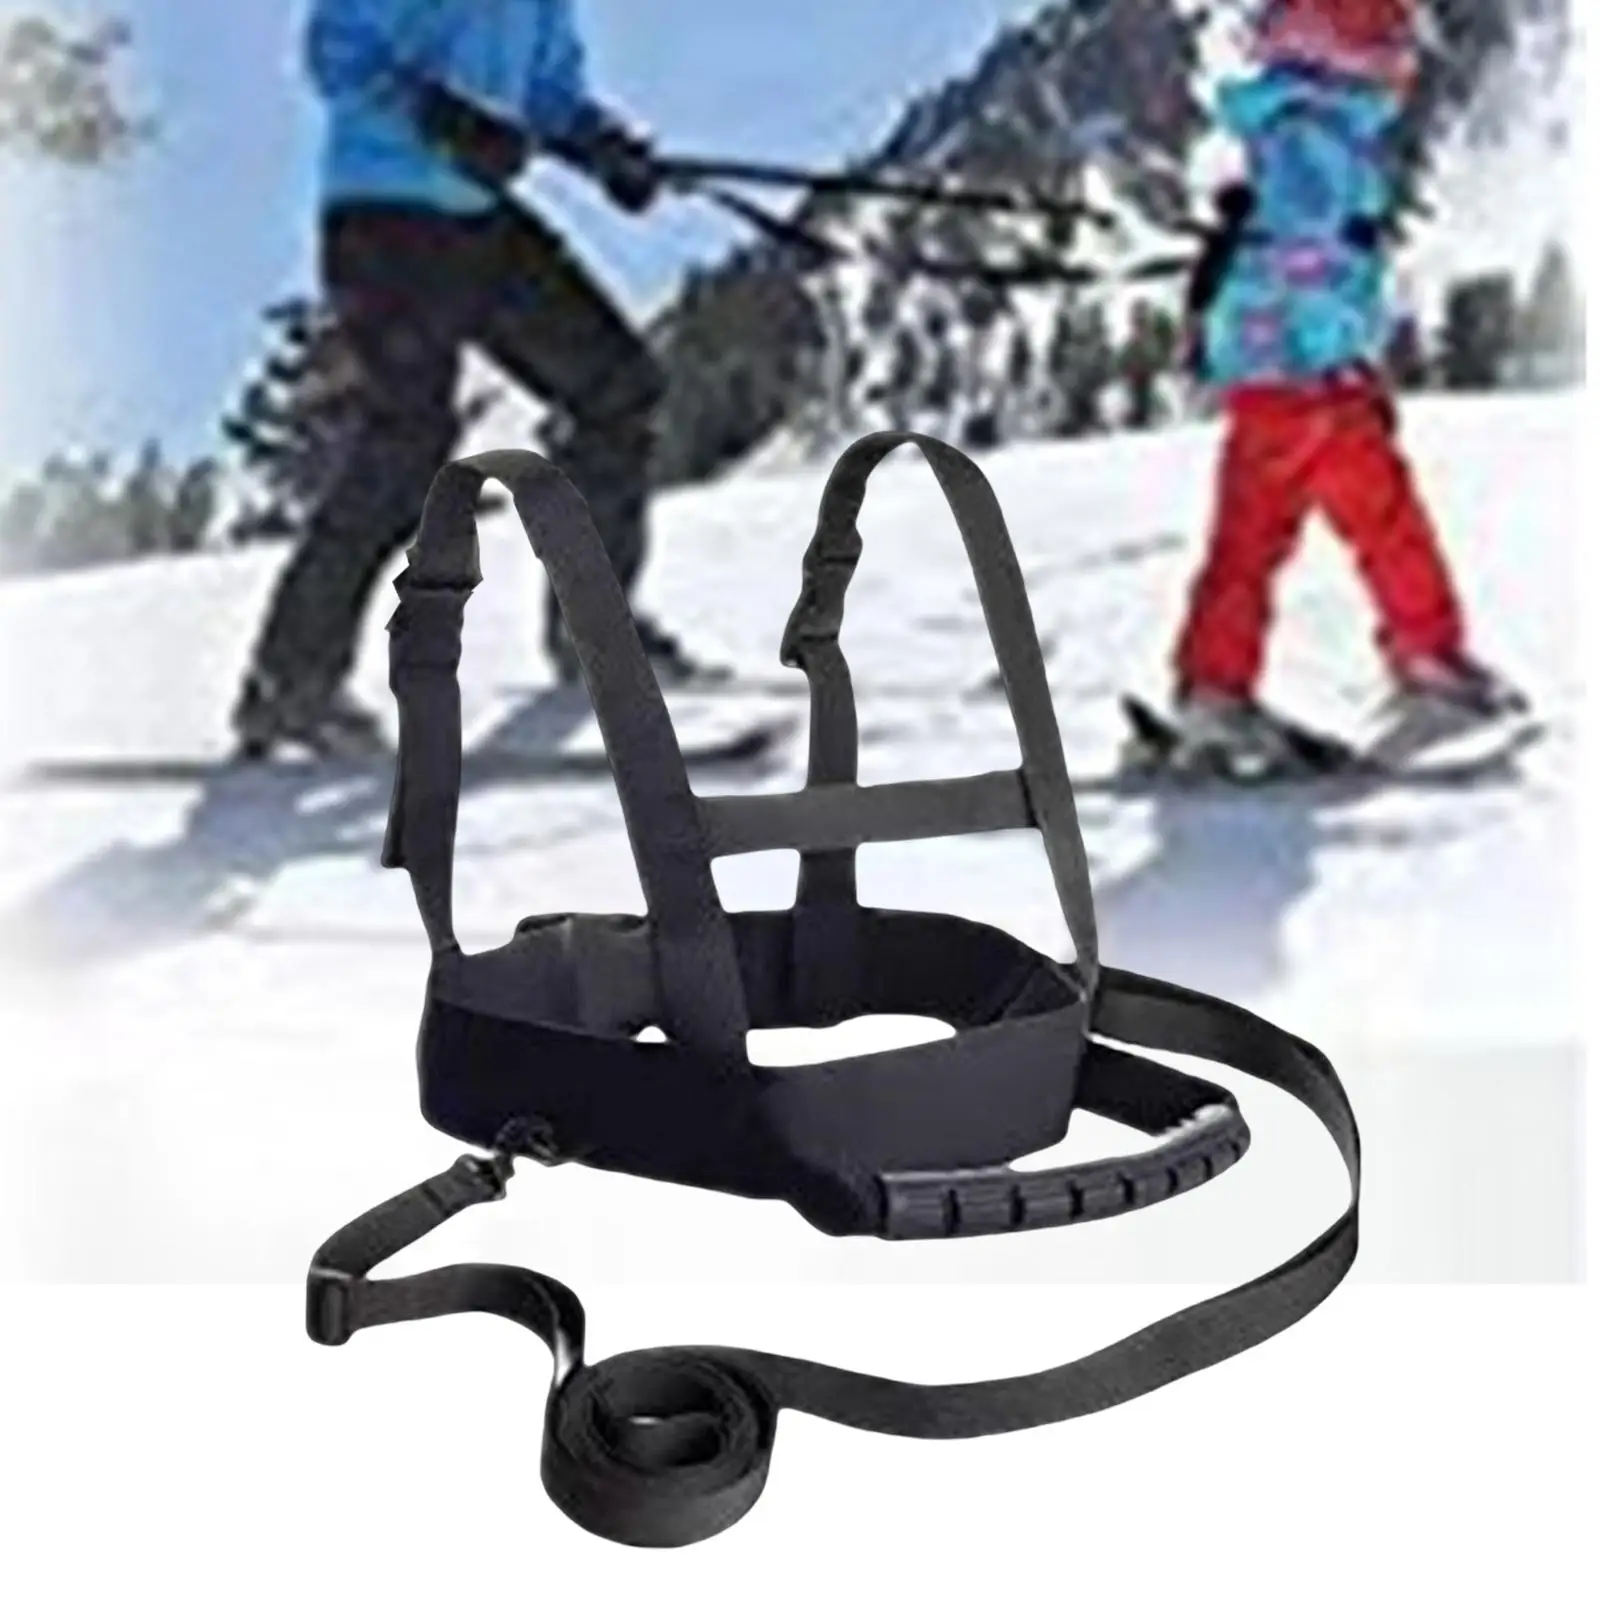 Kids Ski Shoulder Harness Leash, Skating, Snowboard, Roller Skating Training,